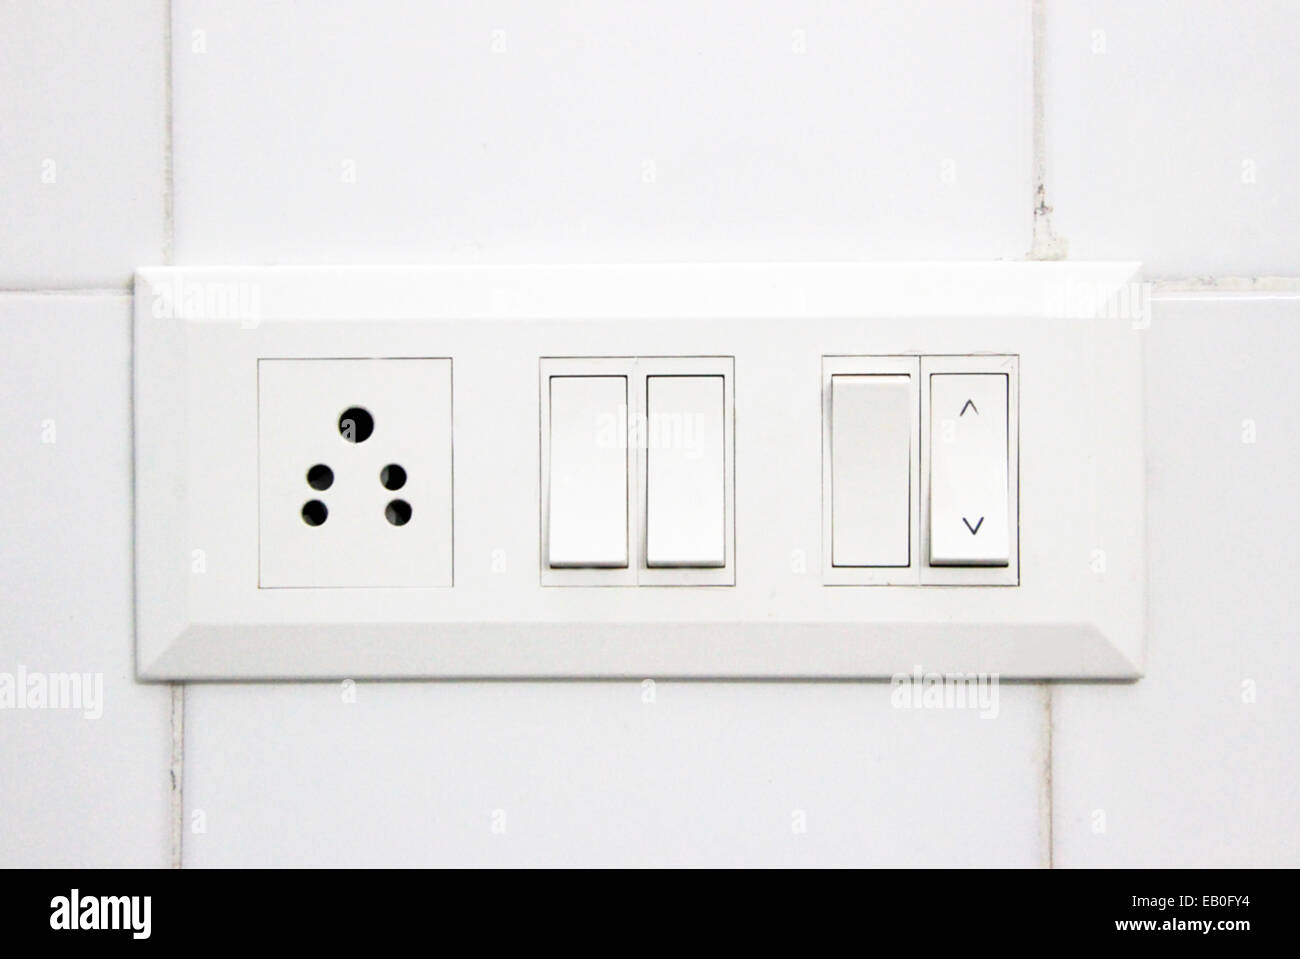 interruptor y enchufe eléctrico y pared blanca interruptor y enchufe  eléctrico y pared blanca 15964305 Foto de stock en Vecteezy